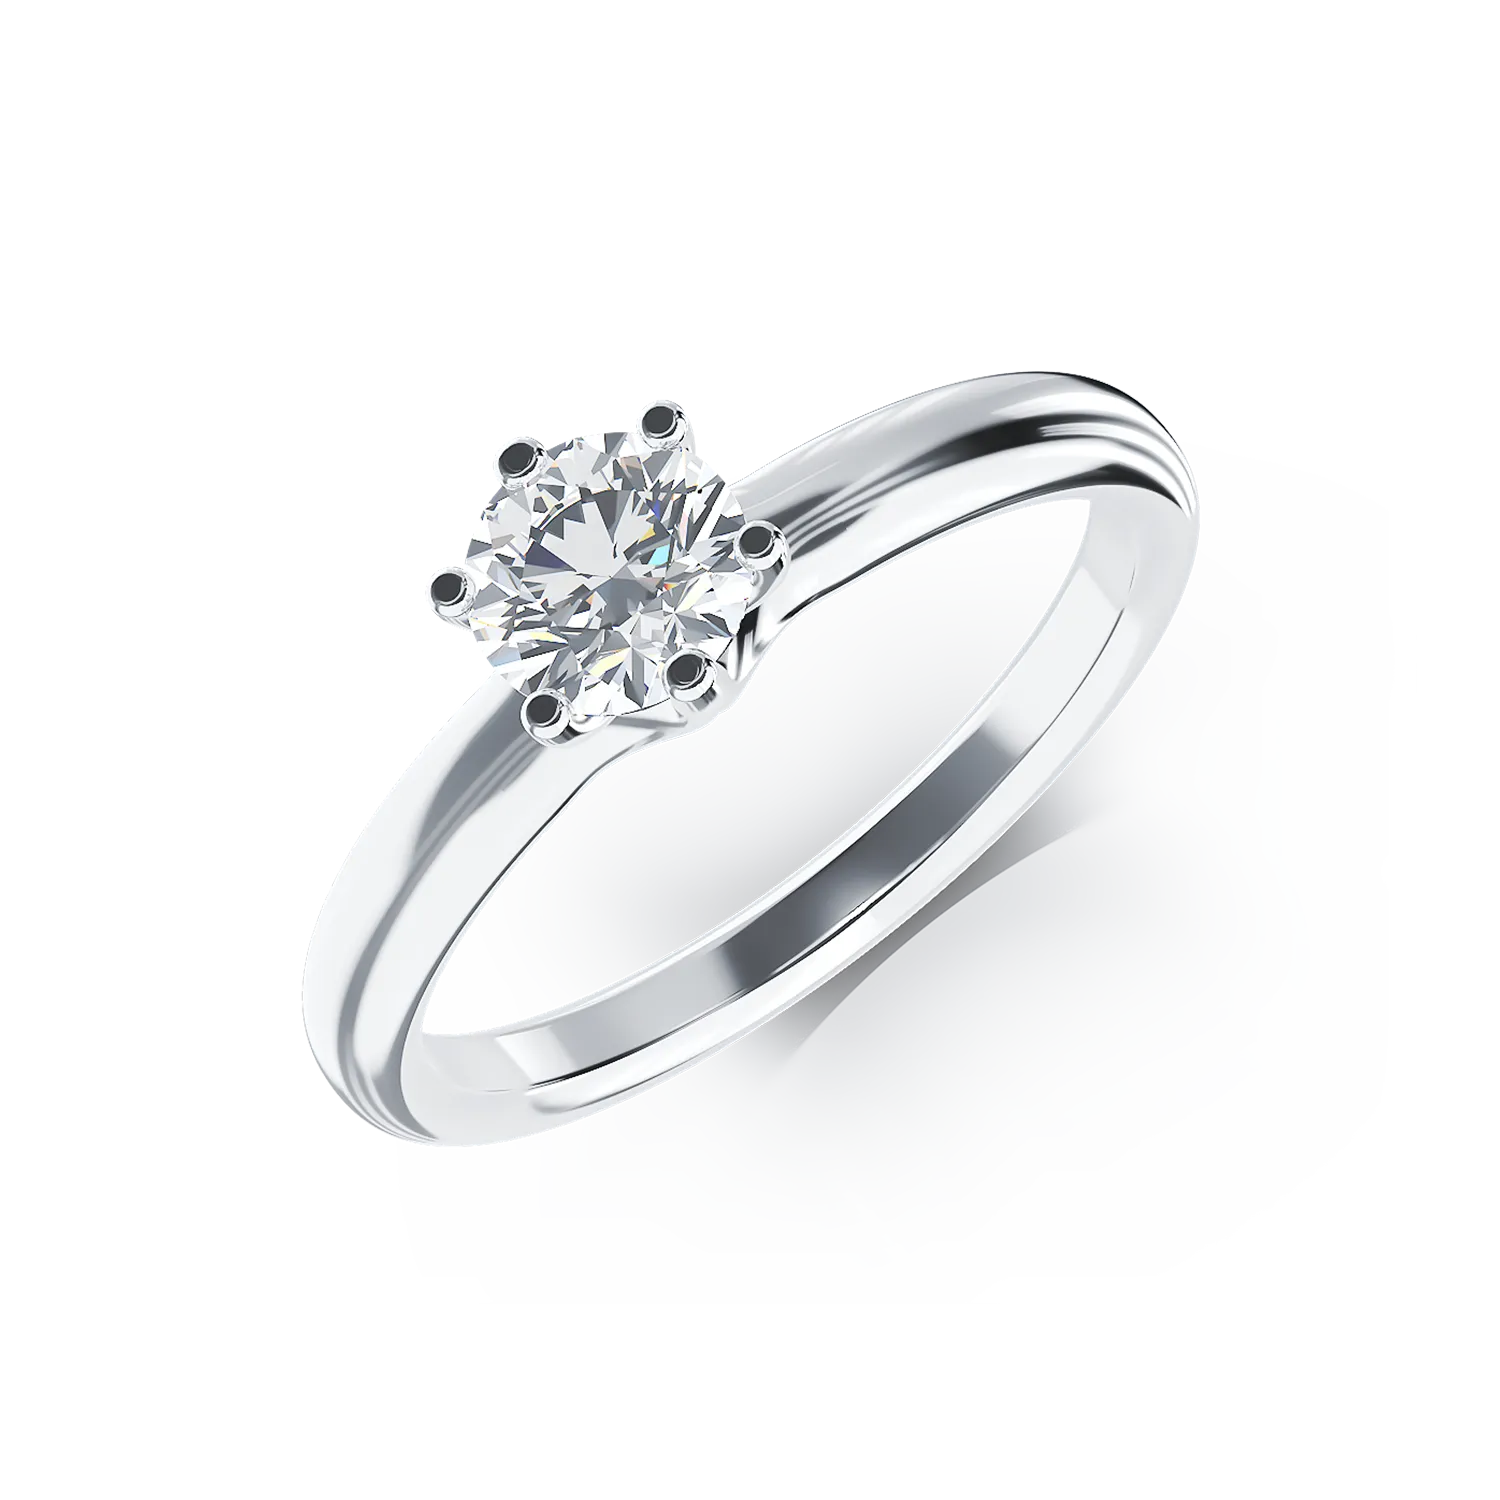 Eljegyzési gyűrű 18K-os fehér aranyból 0,5ct gyémánttal. Gramm: 2,60